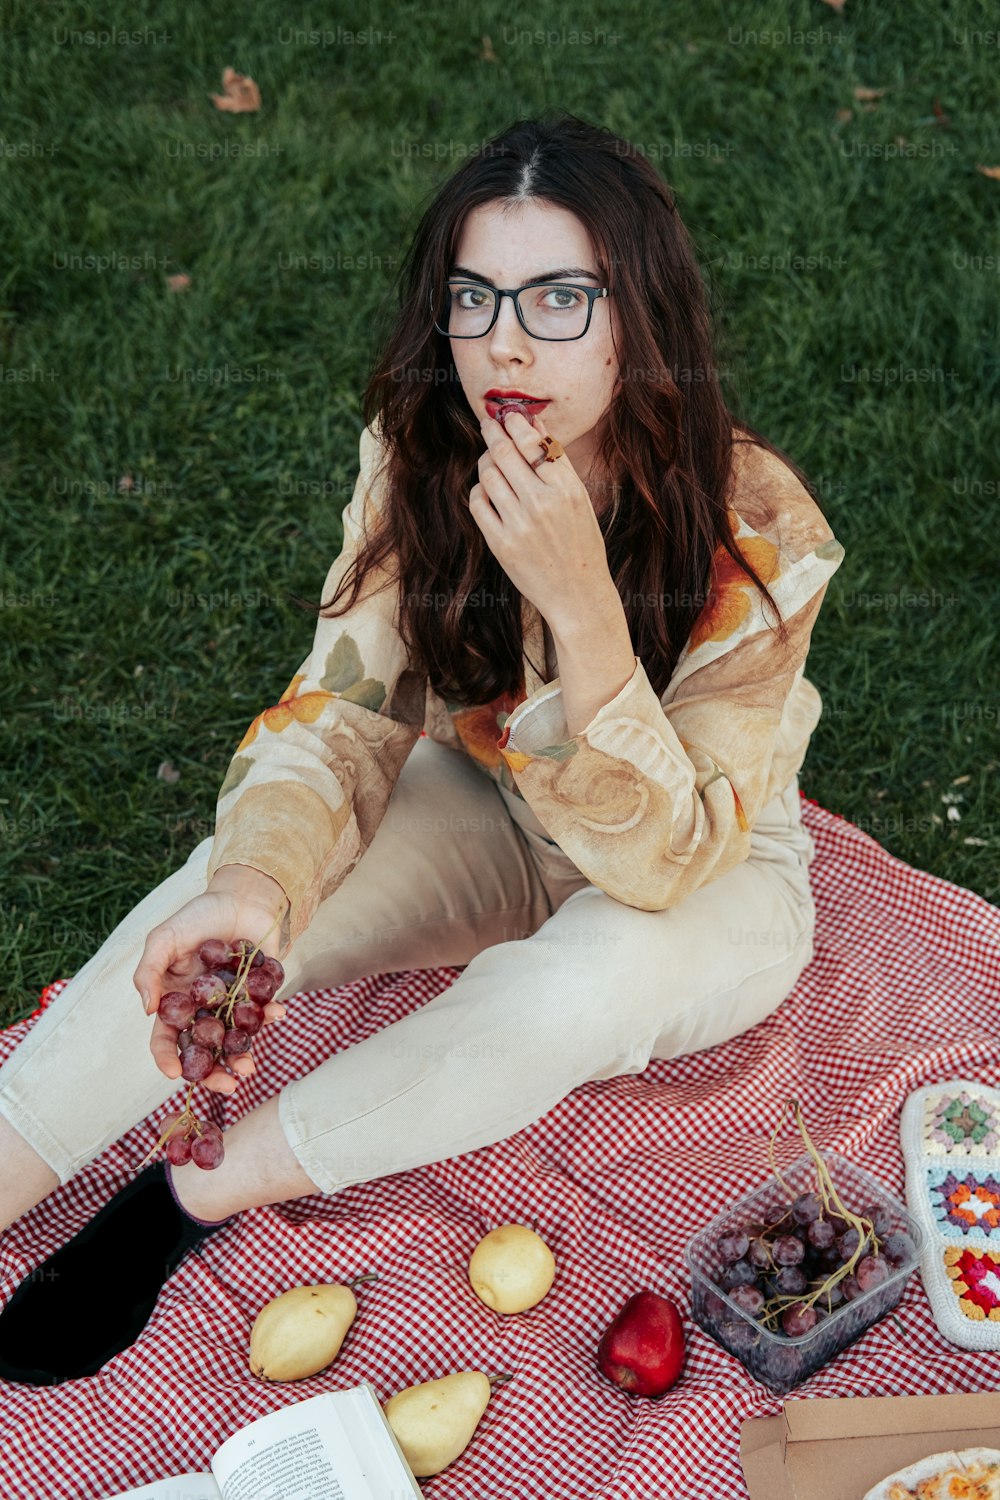 Une femme assise sur une couverture mangeant des raisins